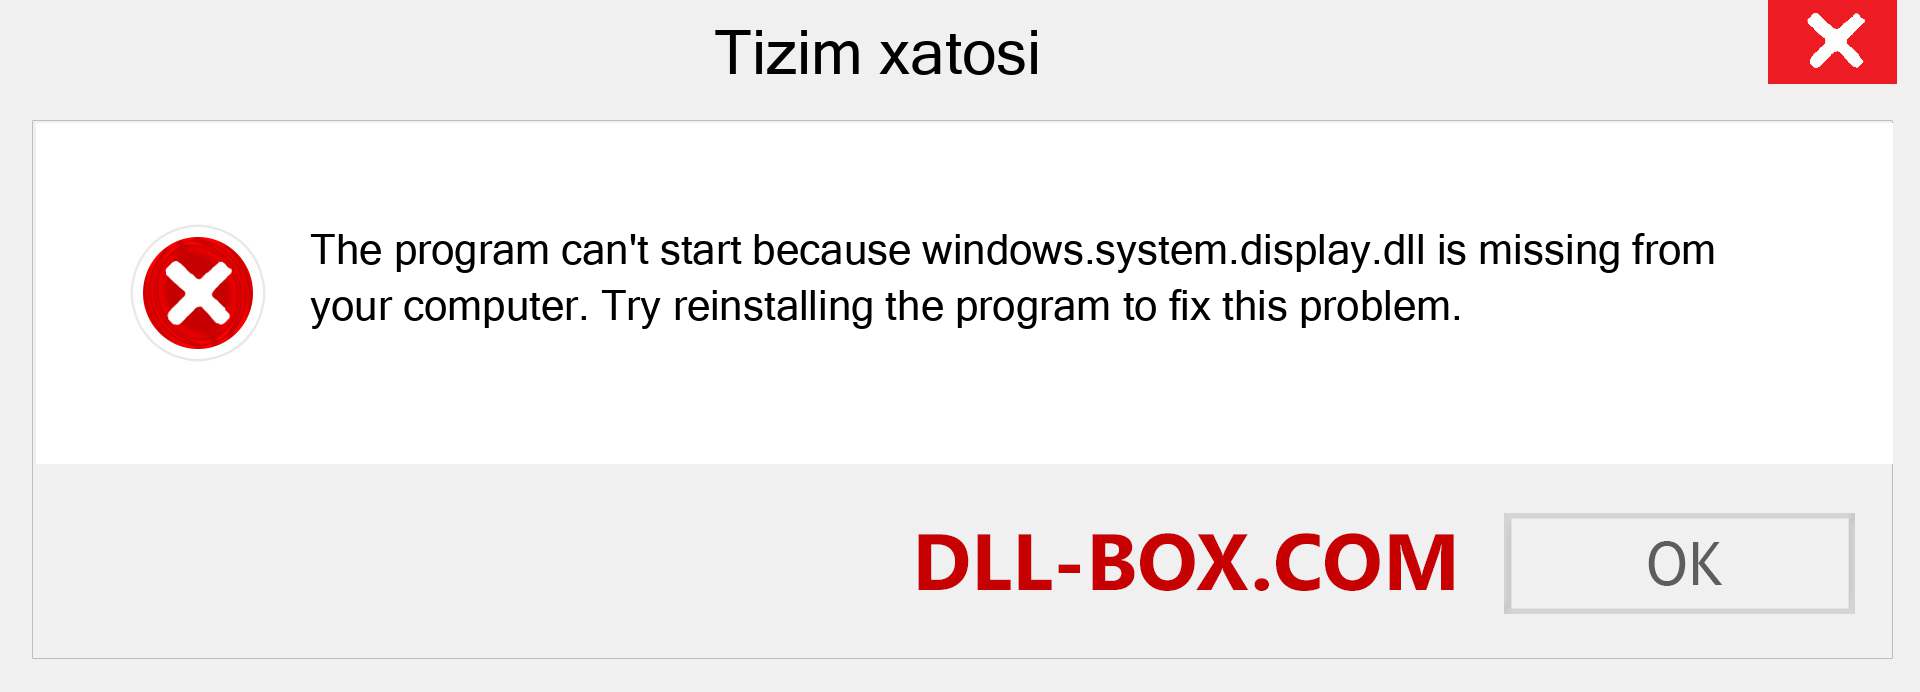 windows.system.display.dll fayli yo'qolganmi?. Windows 7, 8, 10 uchun yuklab olish - Windowsda windows.system.display dll etishmayotgan xatoni tuzating, rasmlar, rasmlar